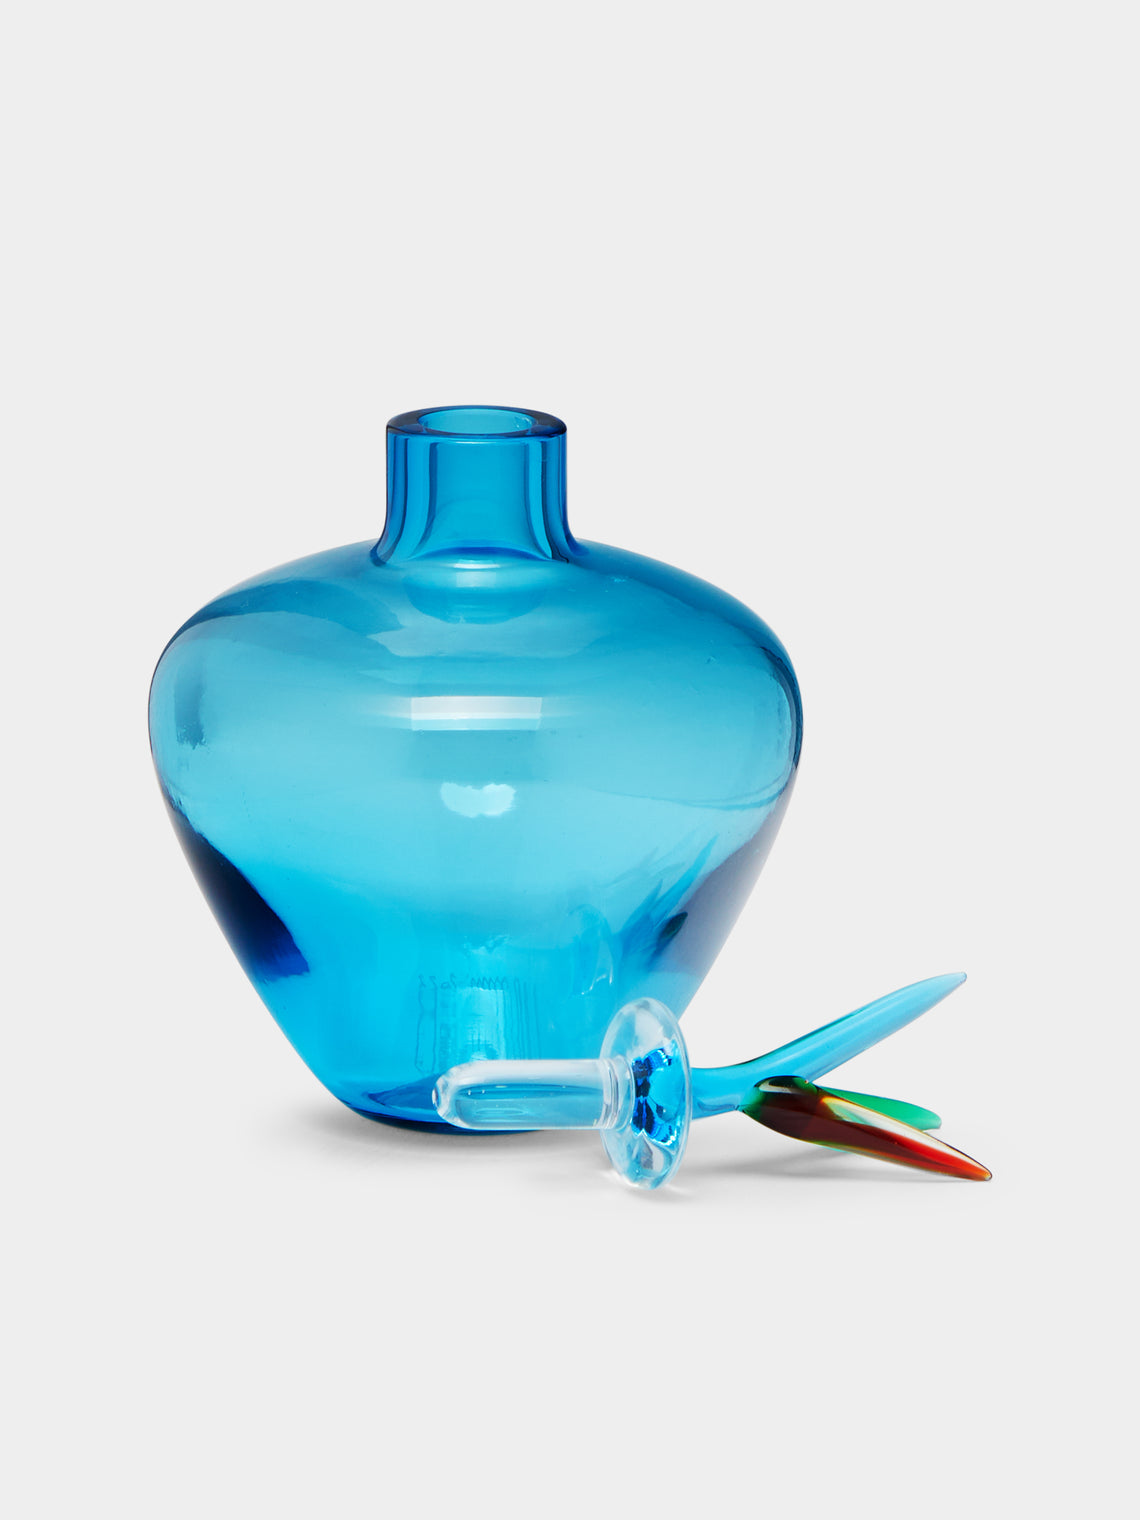 Venini - 1984 Laura de Santillana Monofiore Hand-Blown Murano Glass Perfume Bottle -  - ABASK